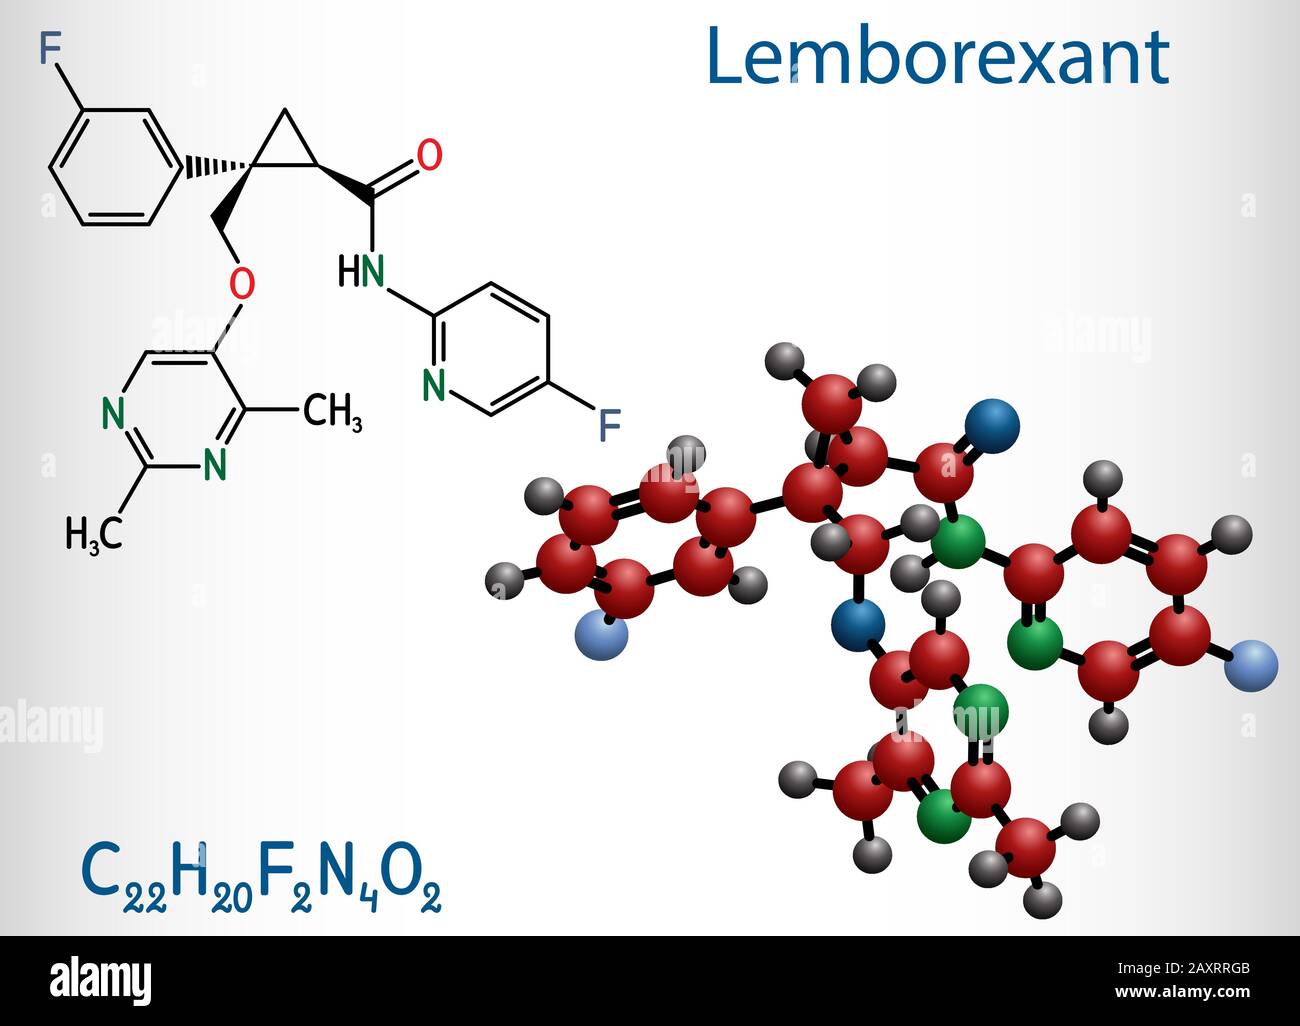 Lemborexant, C22H20F2N4O2-Molekül. Es handelt sich um einen Dual-Orexin-Rezeptor-Antagonisten, der bei der Behandlung von Schlaflosigkeit verwendet wird. Strukturelle chemische Formel und Molekül Stock Vektor